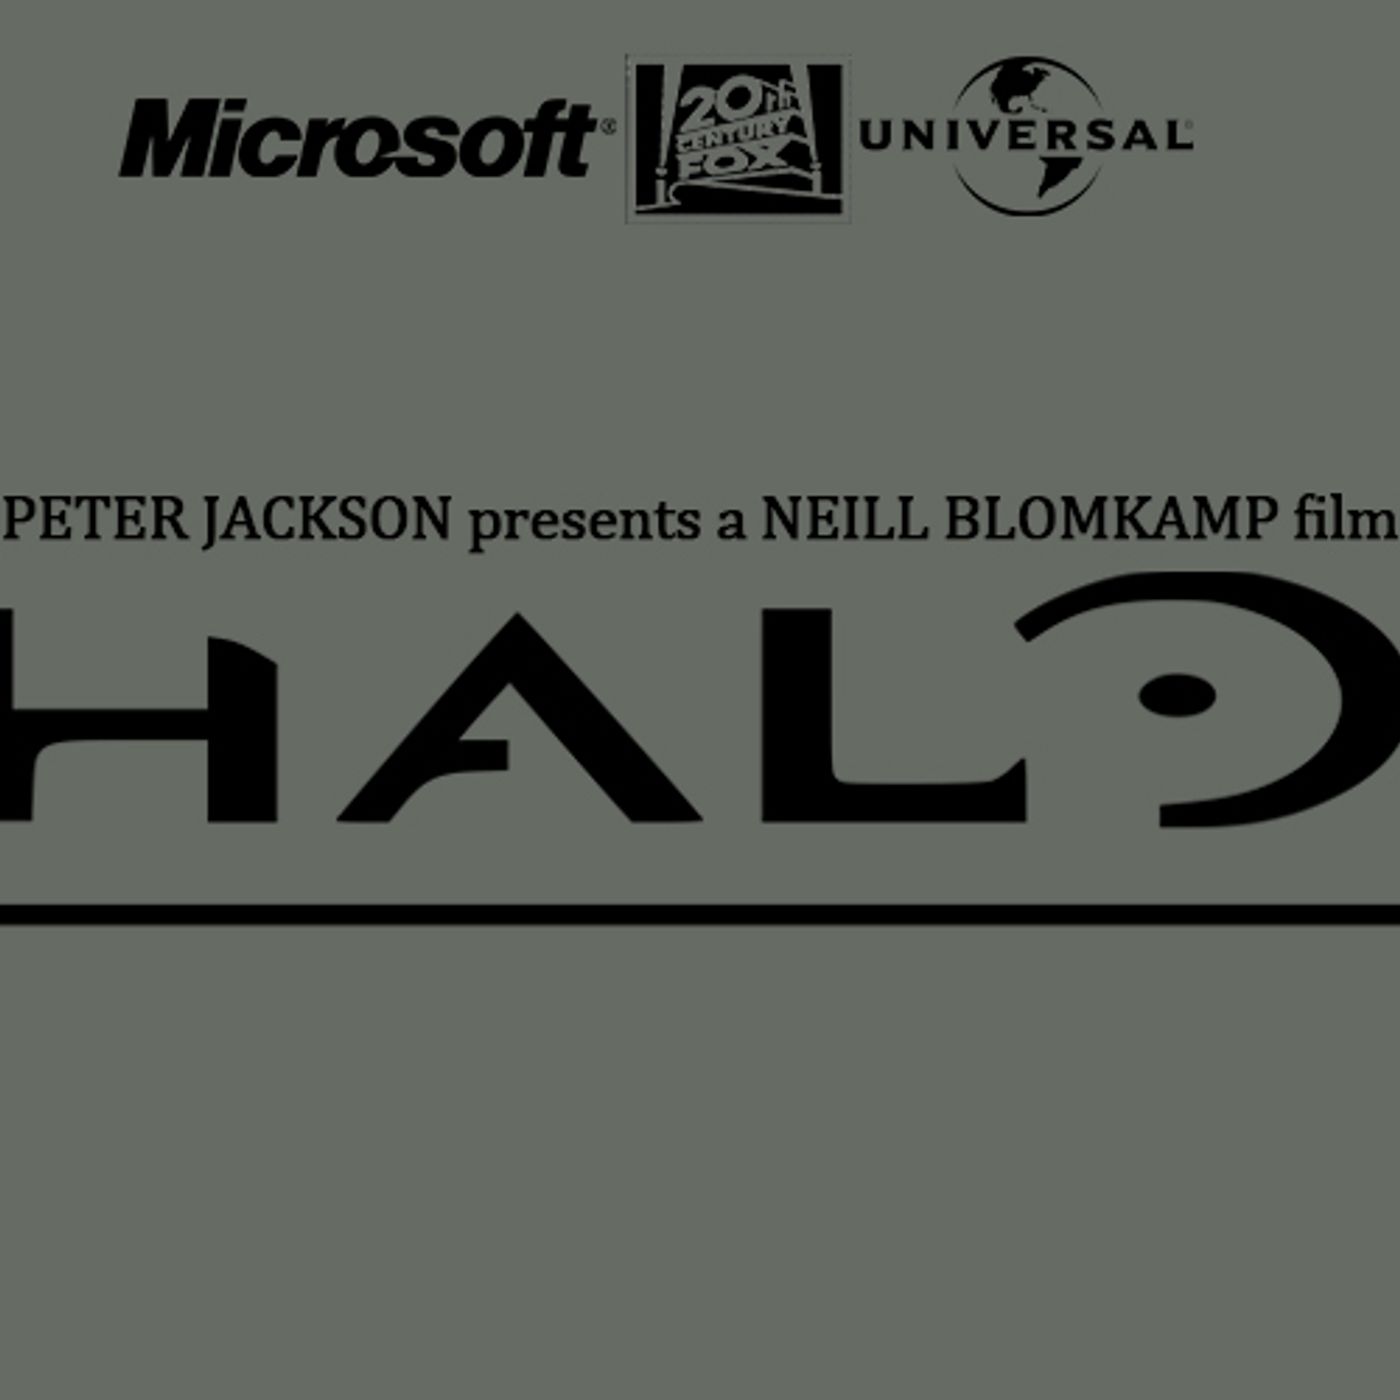 Neil Blomkamp's Halo